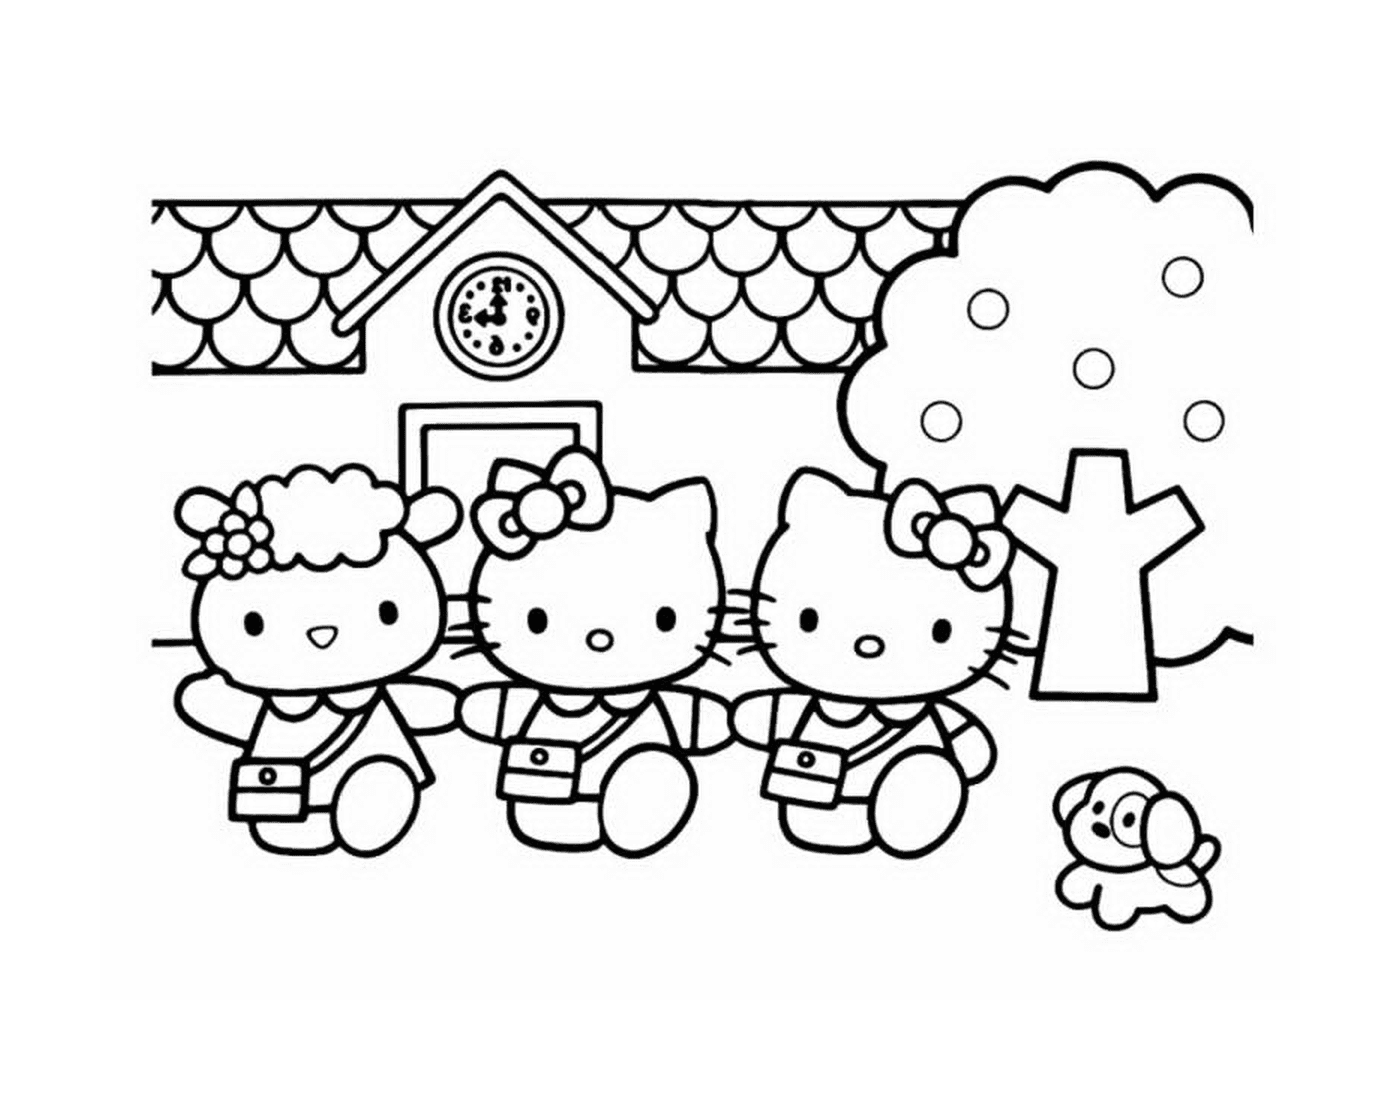   Un groupe de Hello Kitty devant une maison 